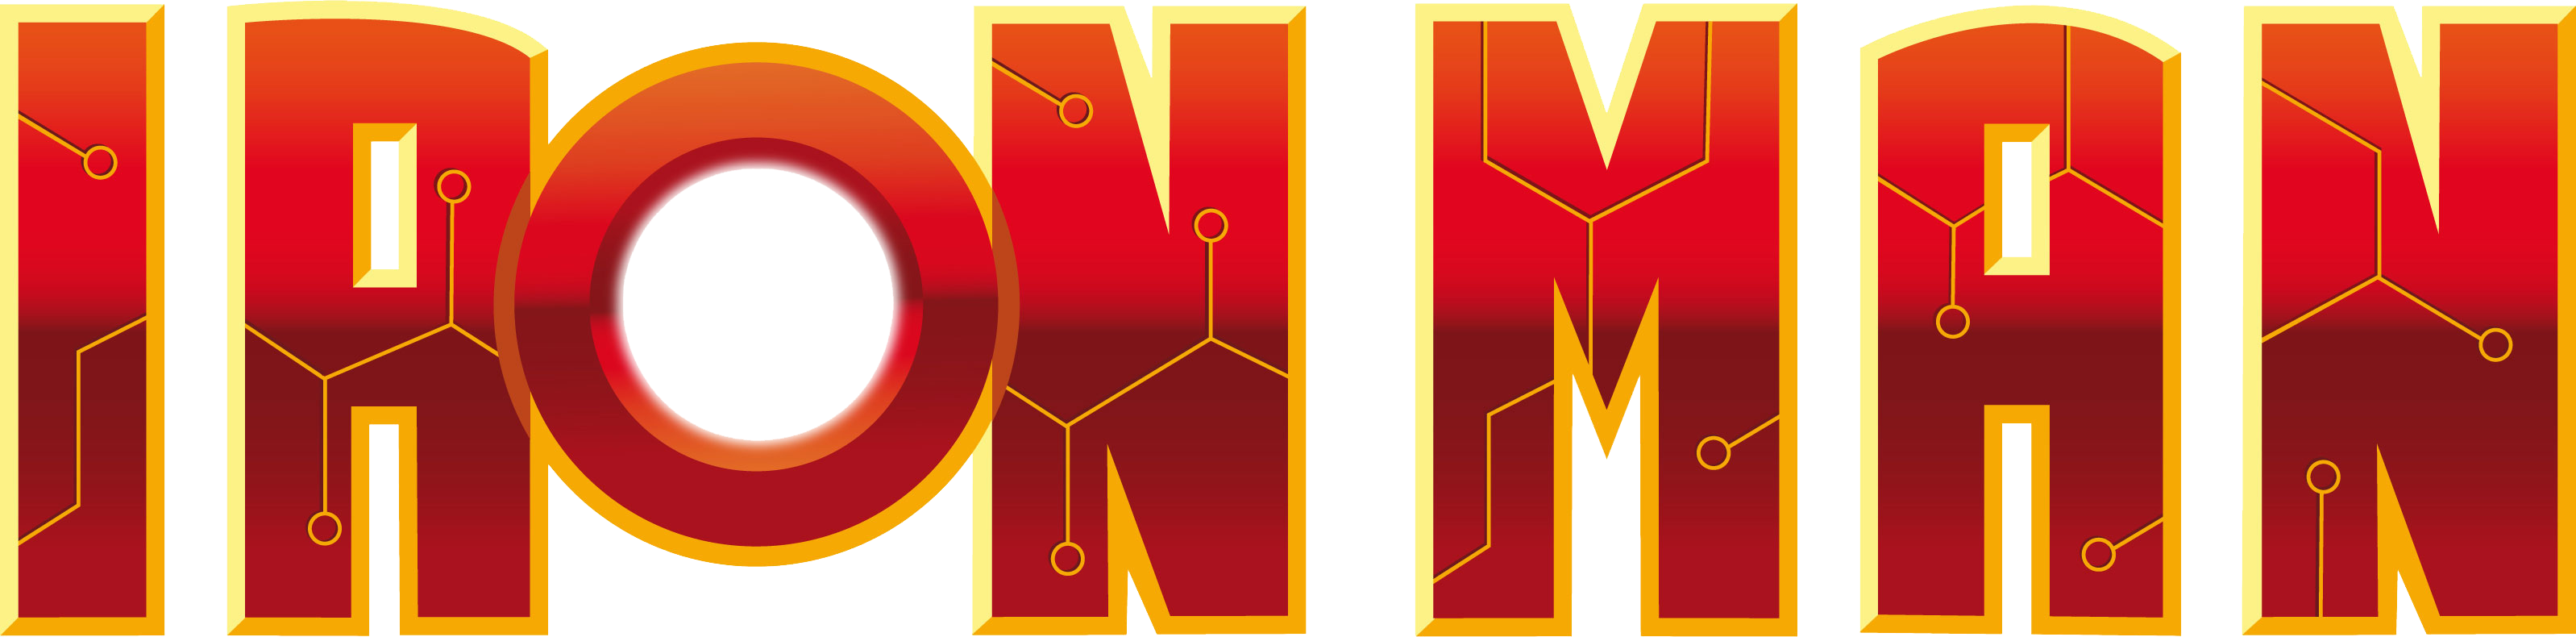 Iron Man Logo PNG Photo